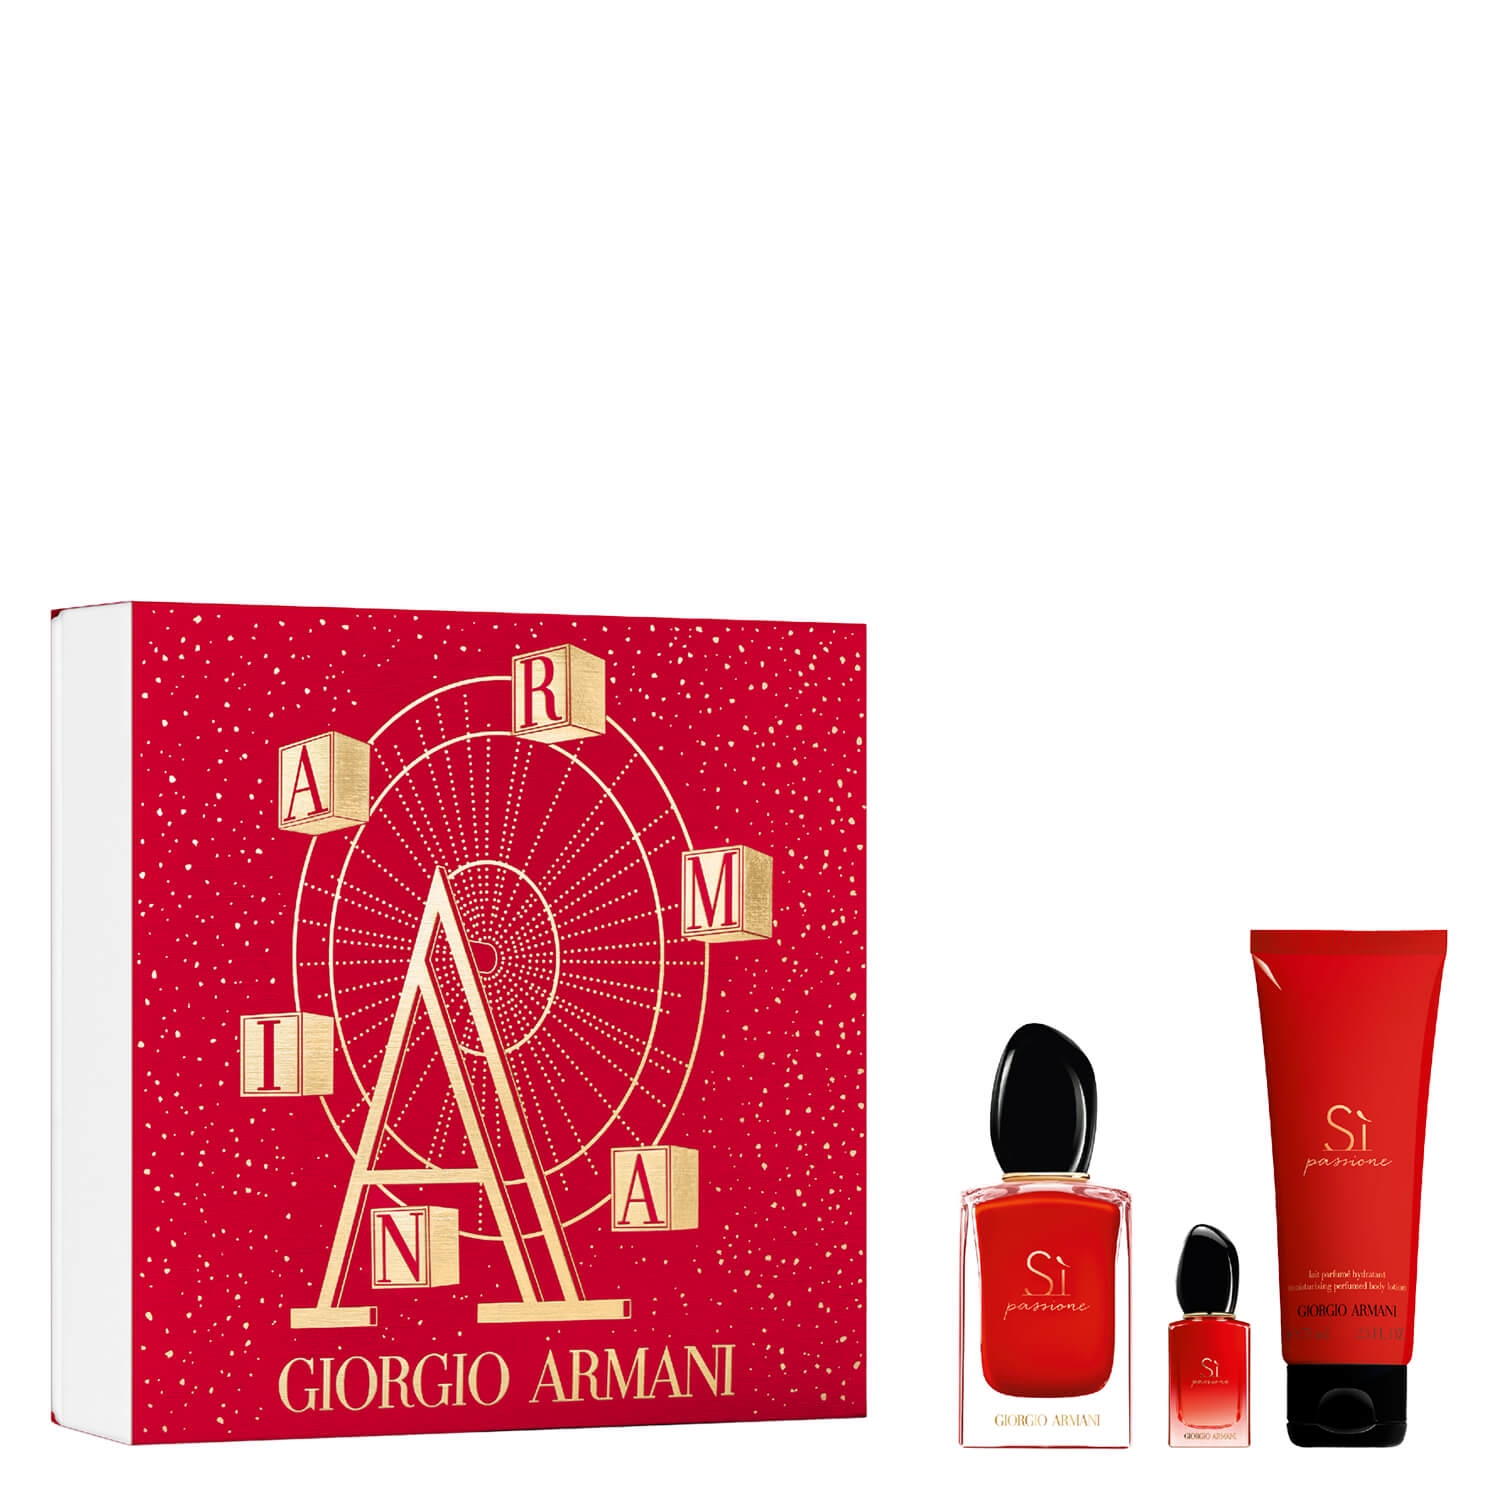 Product image from Sì - Passione Eau de Parfum Set 50ml